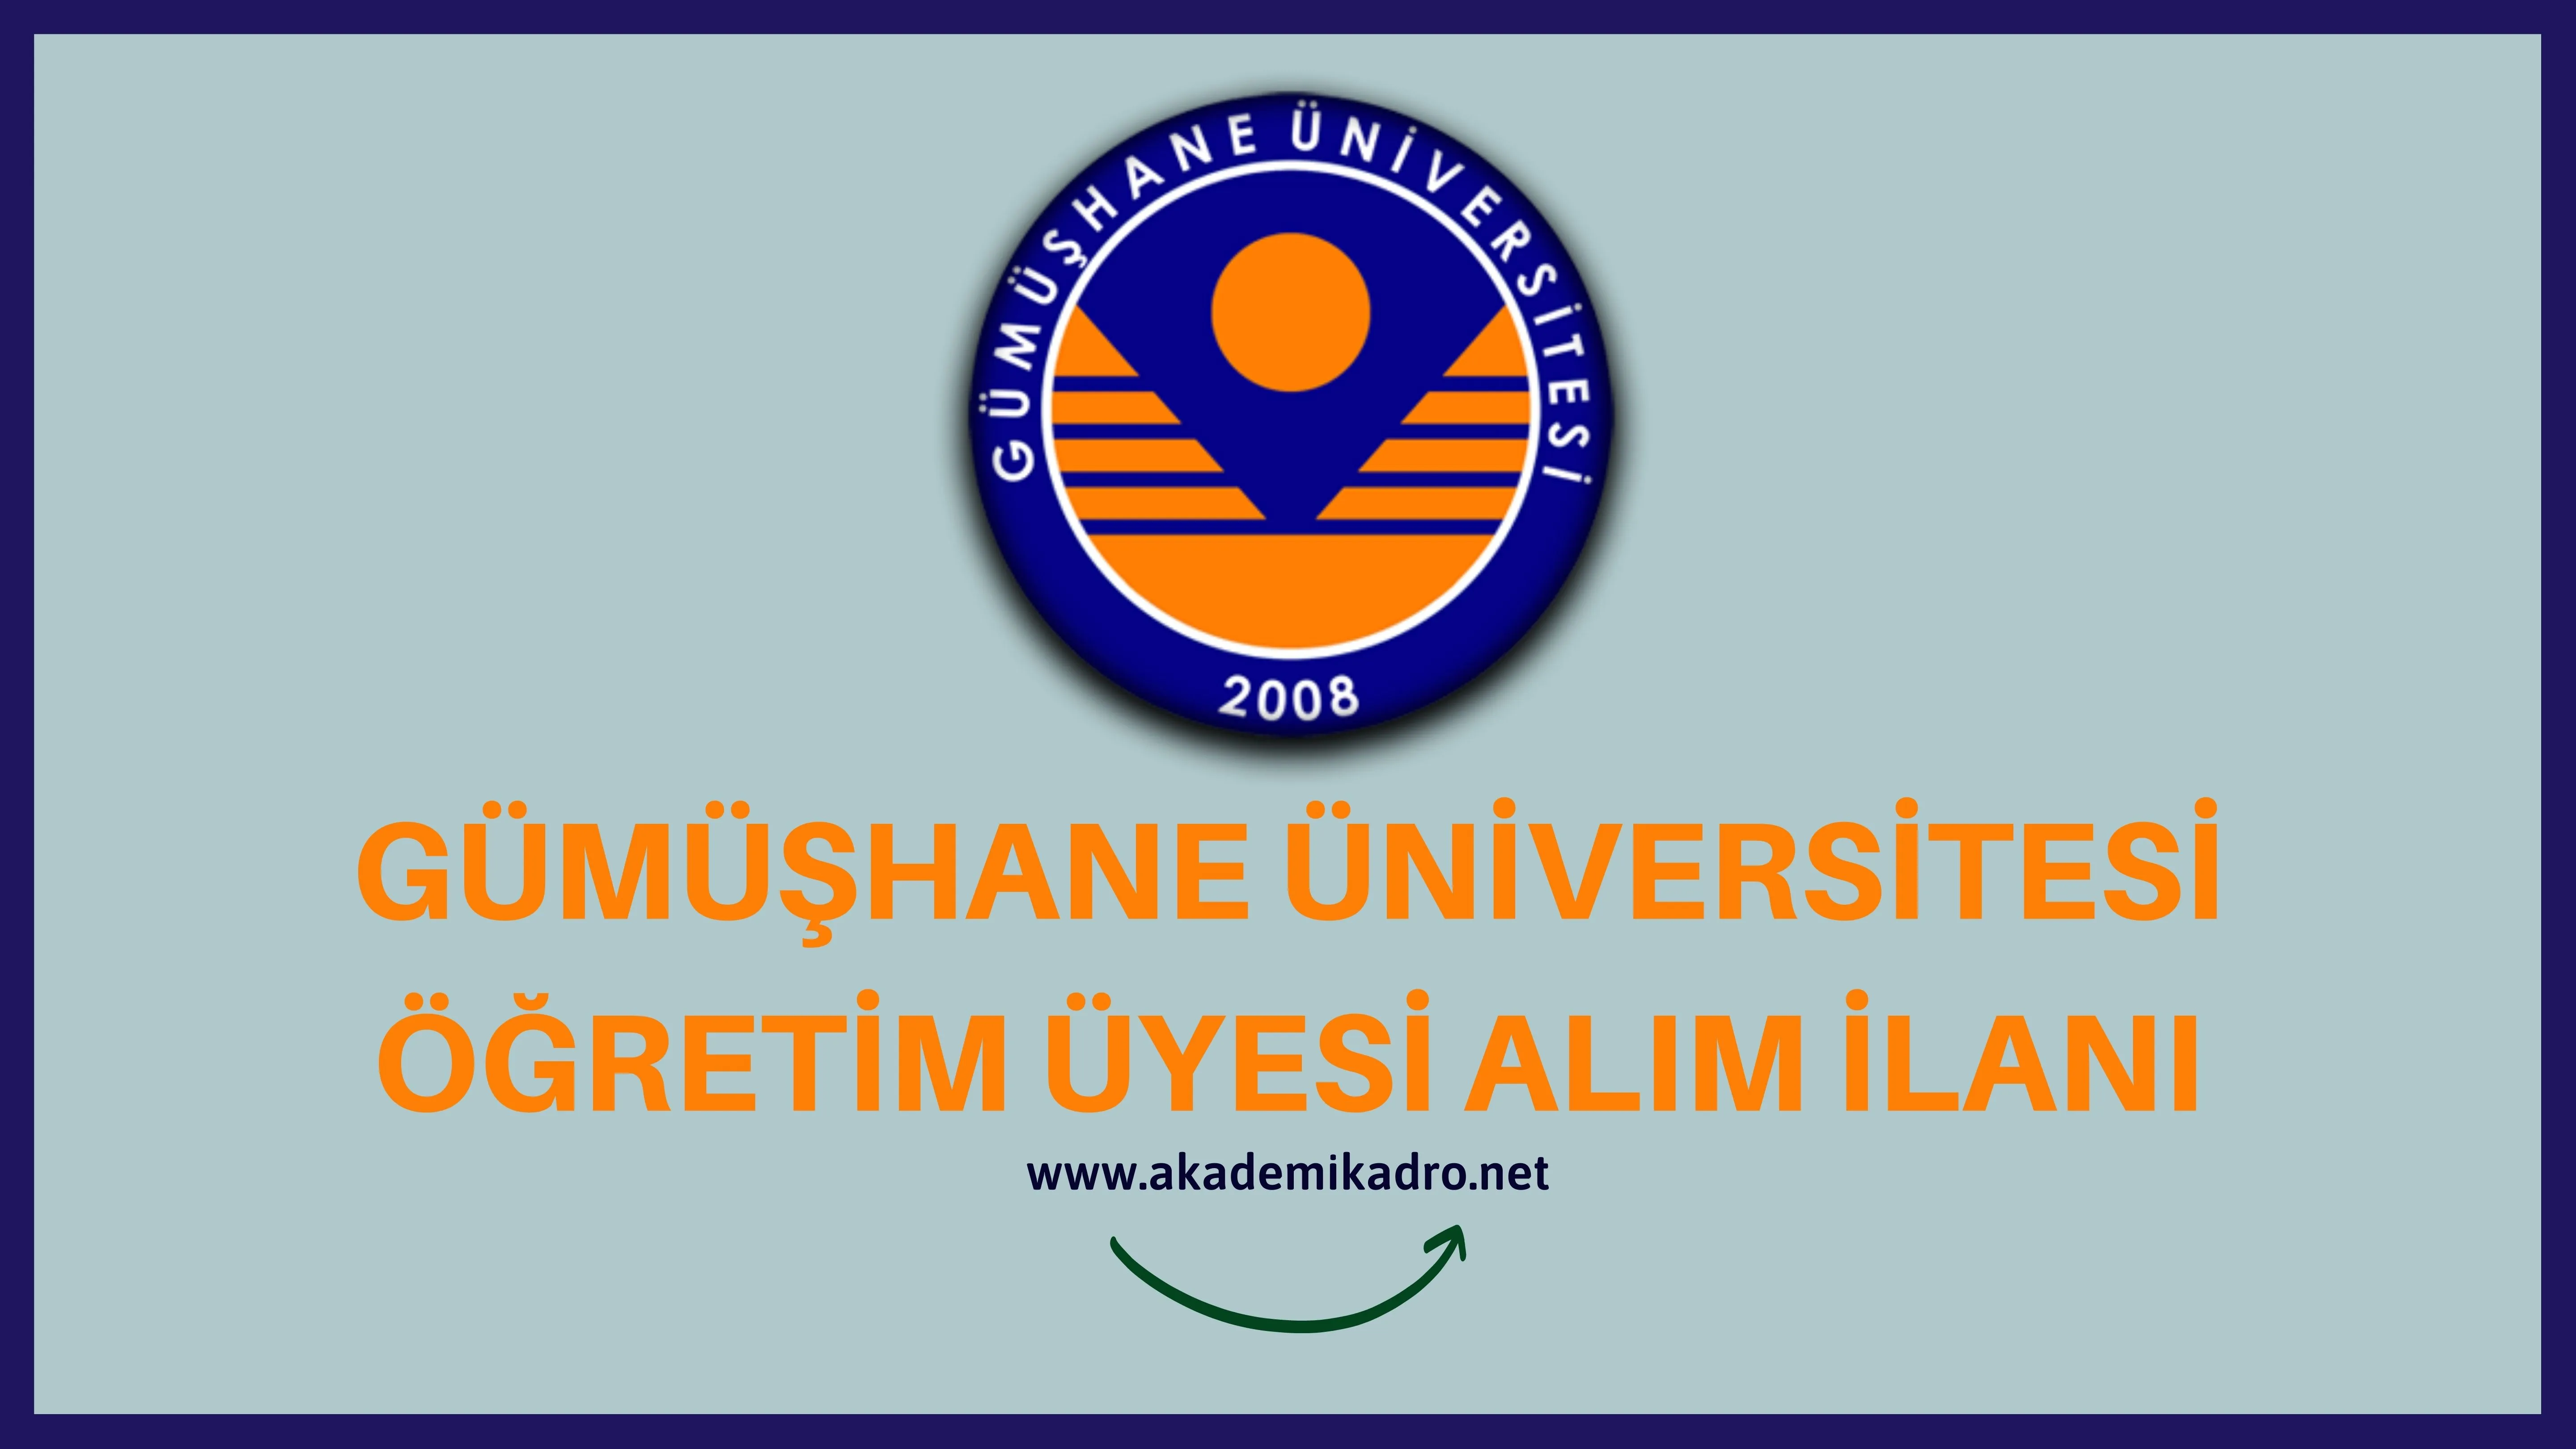 Gümüşhane Üniversitesi birçok alandan 24 Akademik personel alacak. Son başvuru tarihi 23 Haziran 2023.